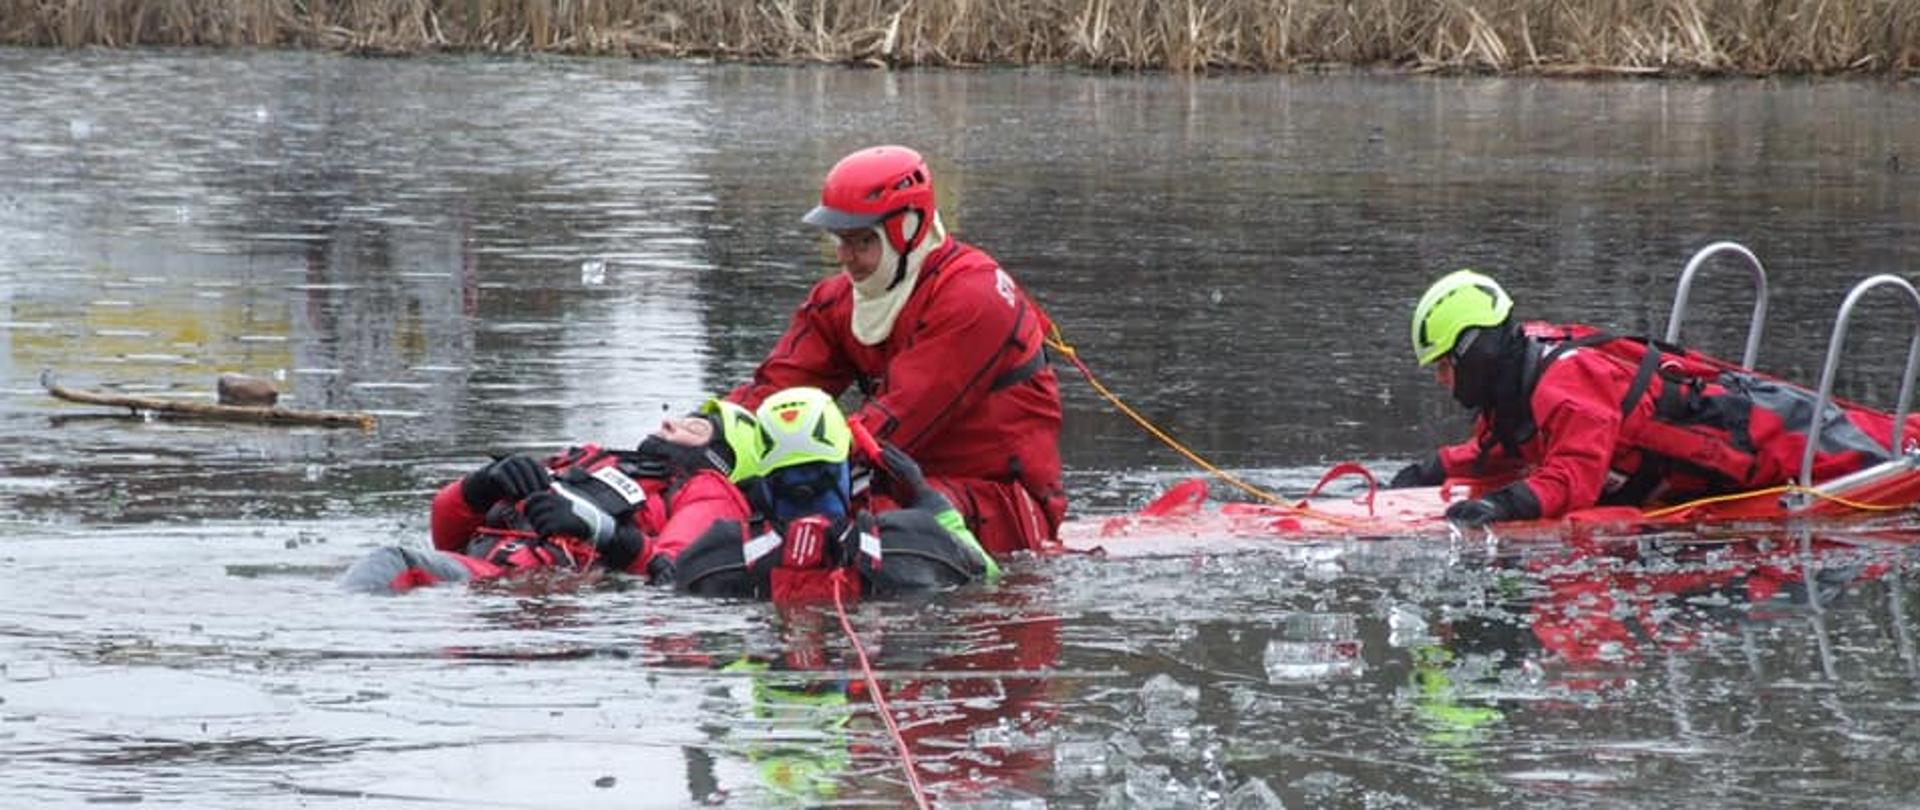 Czterej strażacy w ubraniach do pracy w wodzie ćwiczą na zamarźniętym zbiorniku wodnym ratowanie osoby, pod którą załamał się lód.